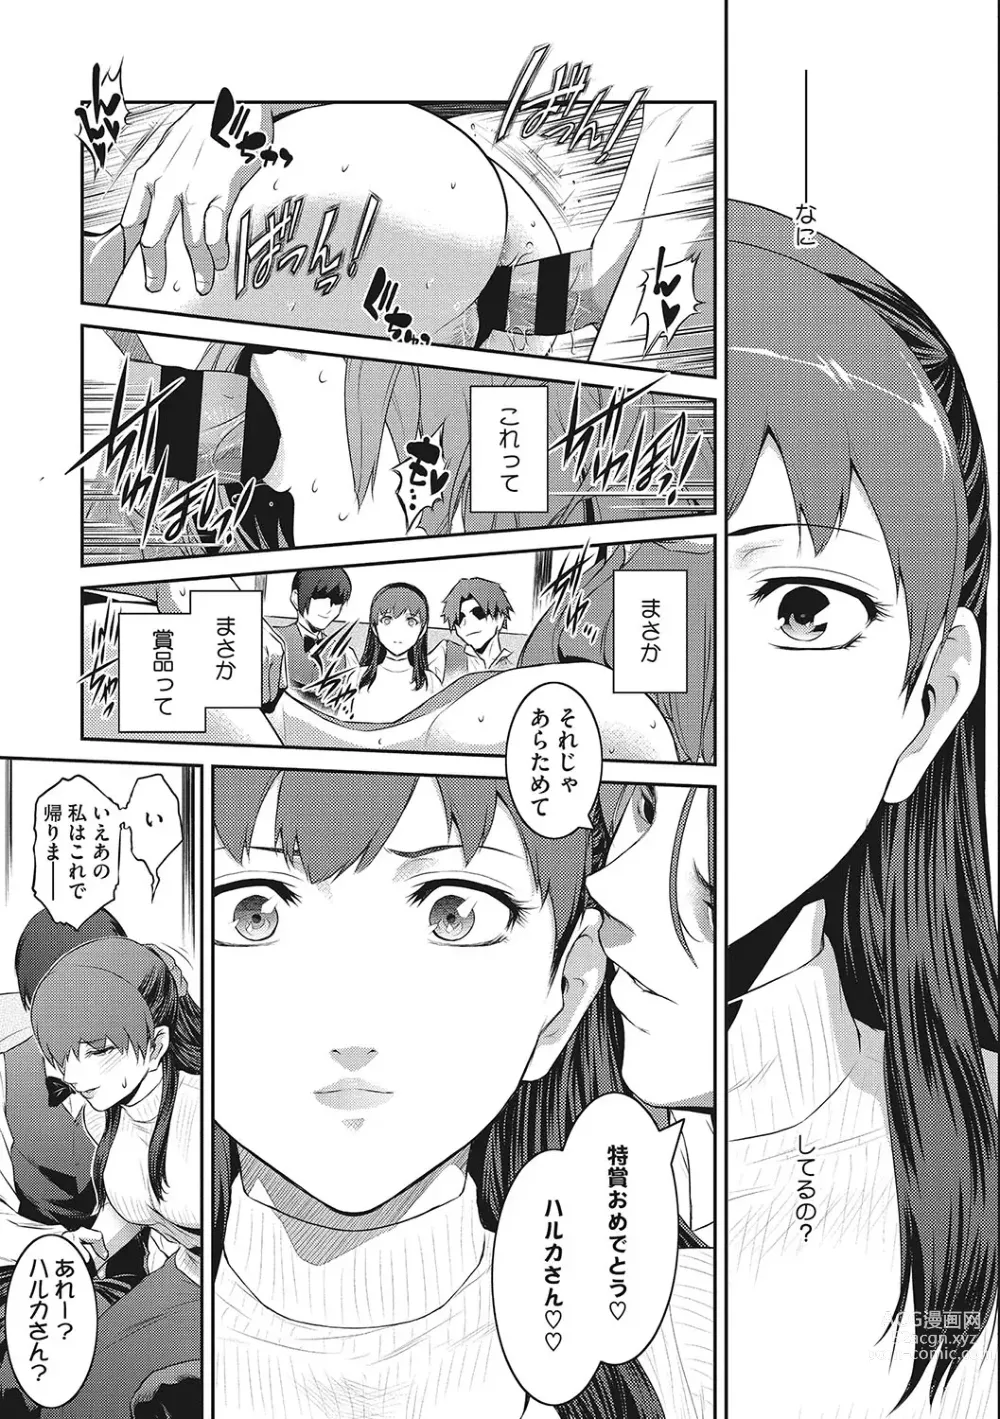 Page 182 of manga Genwaku